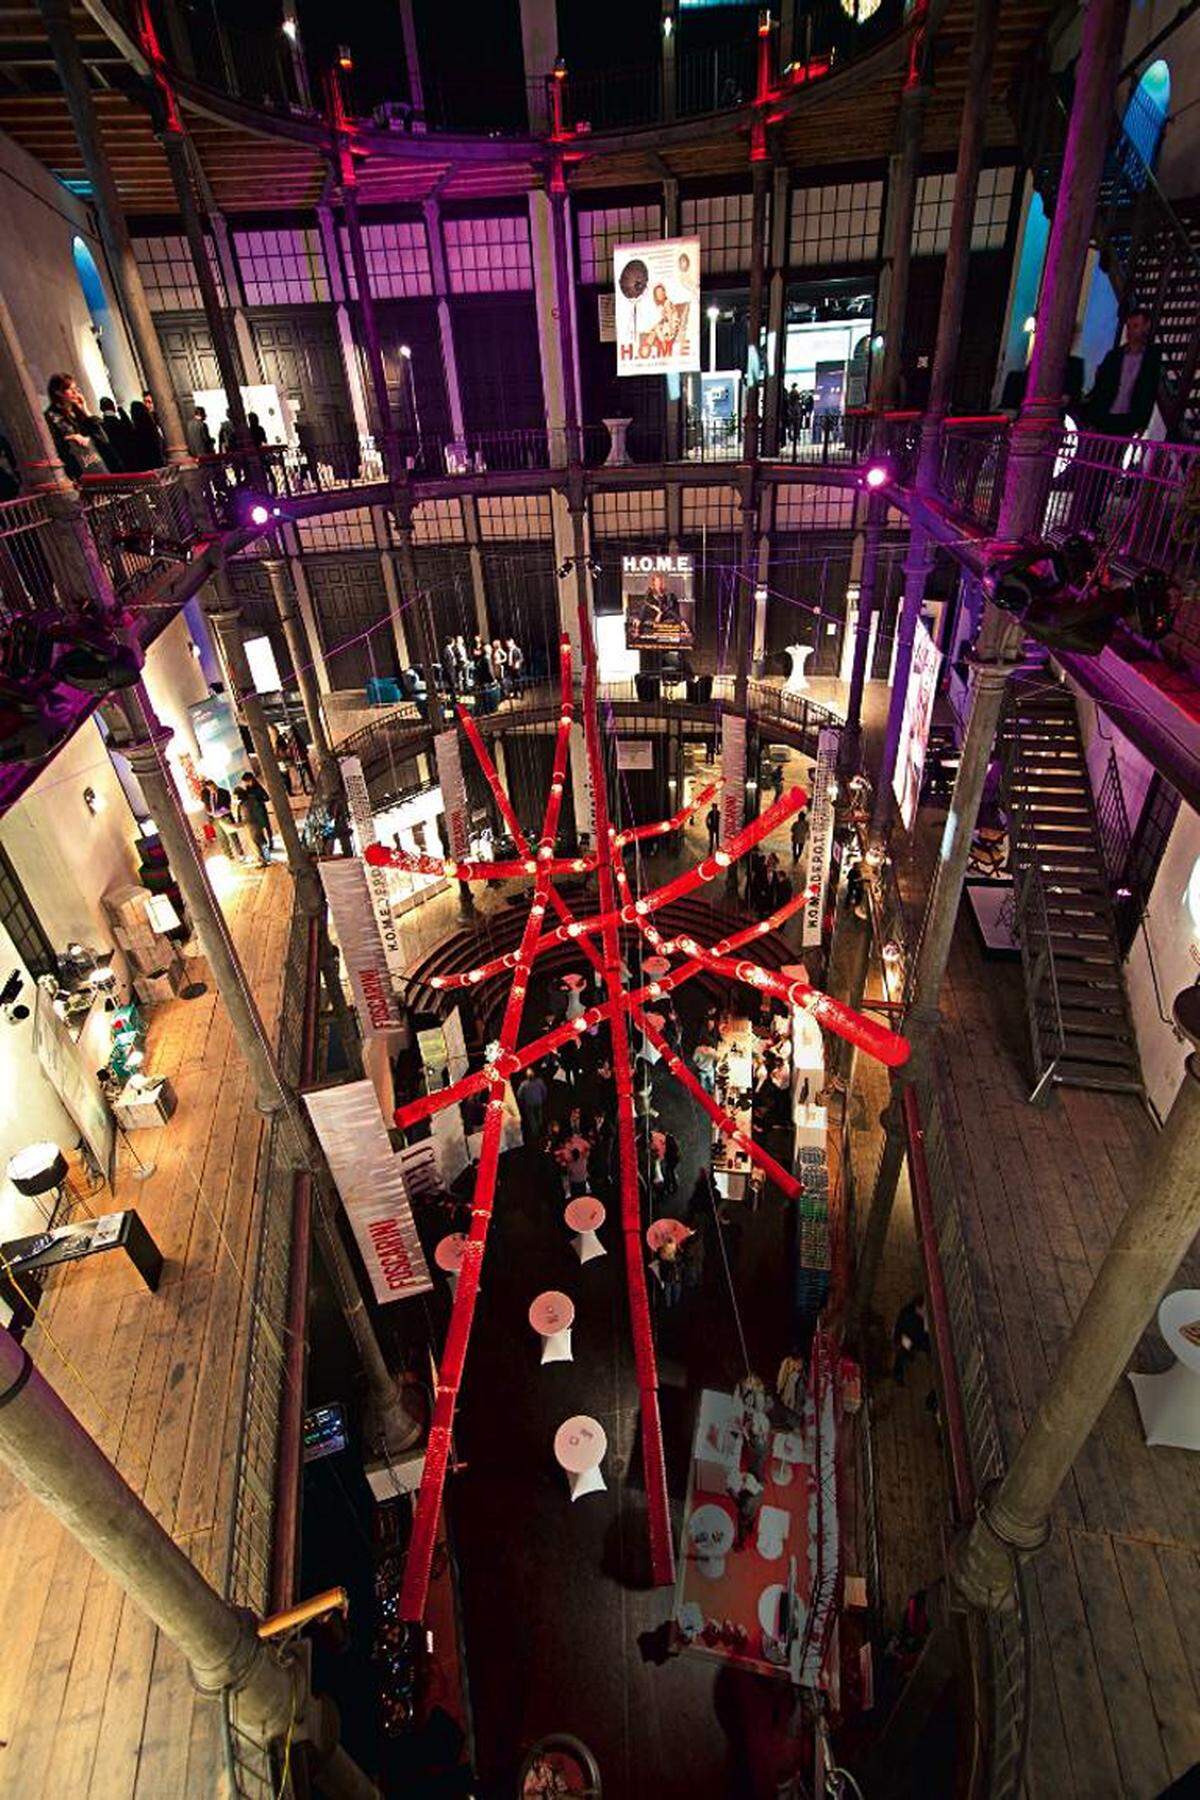 Auf über 4000 Quadratmetern Ausstellungsfläche zeigt die Messe Home Depot bis zum 18. März namhafte internationale Designhersteller.